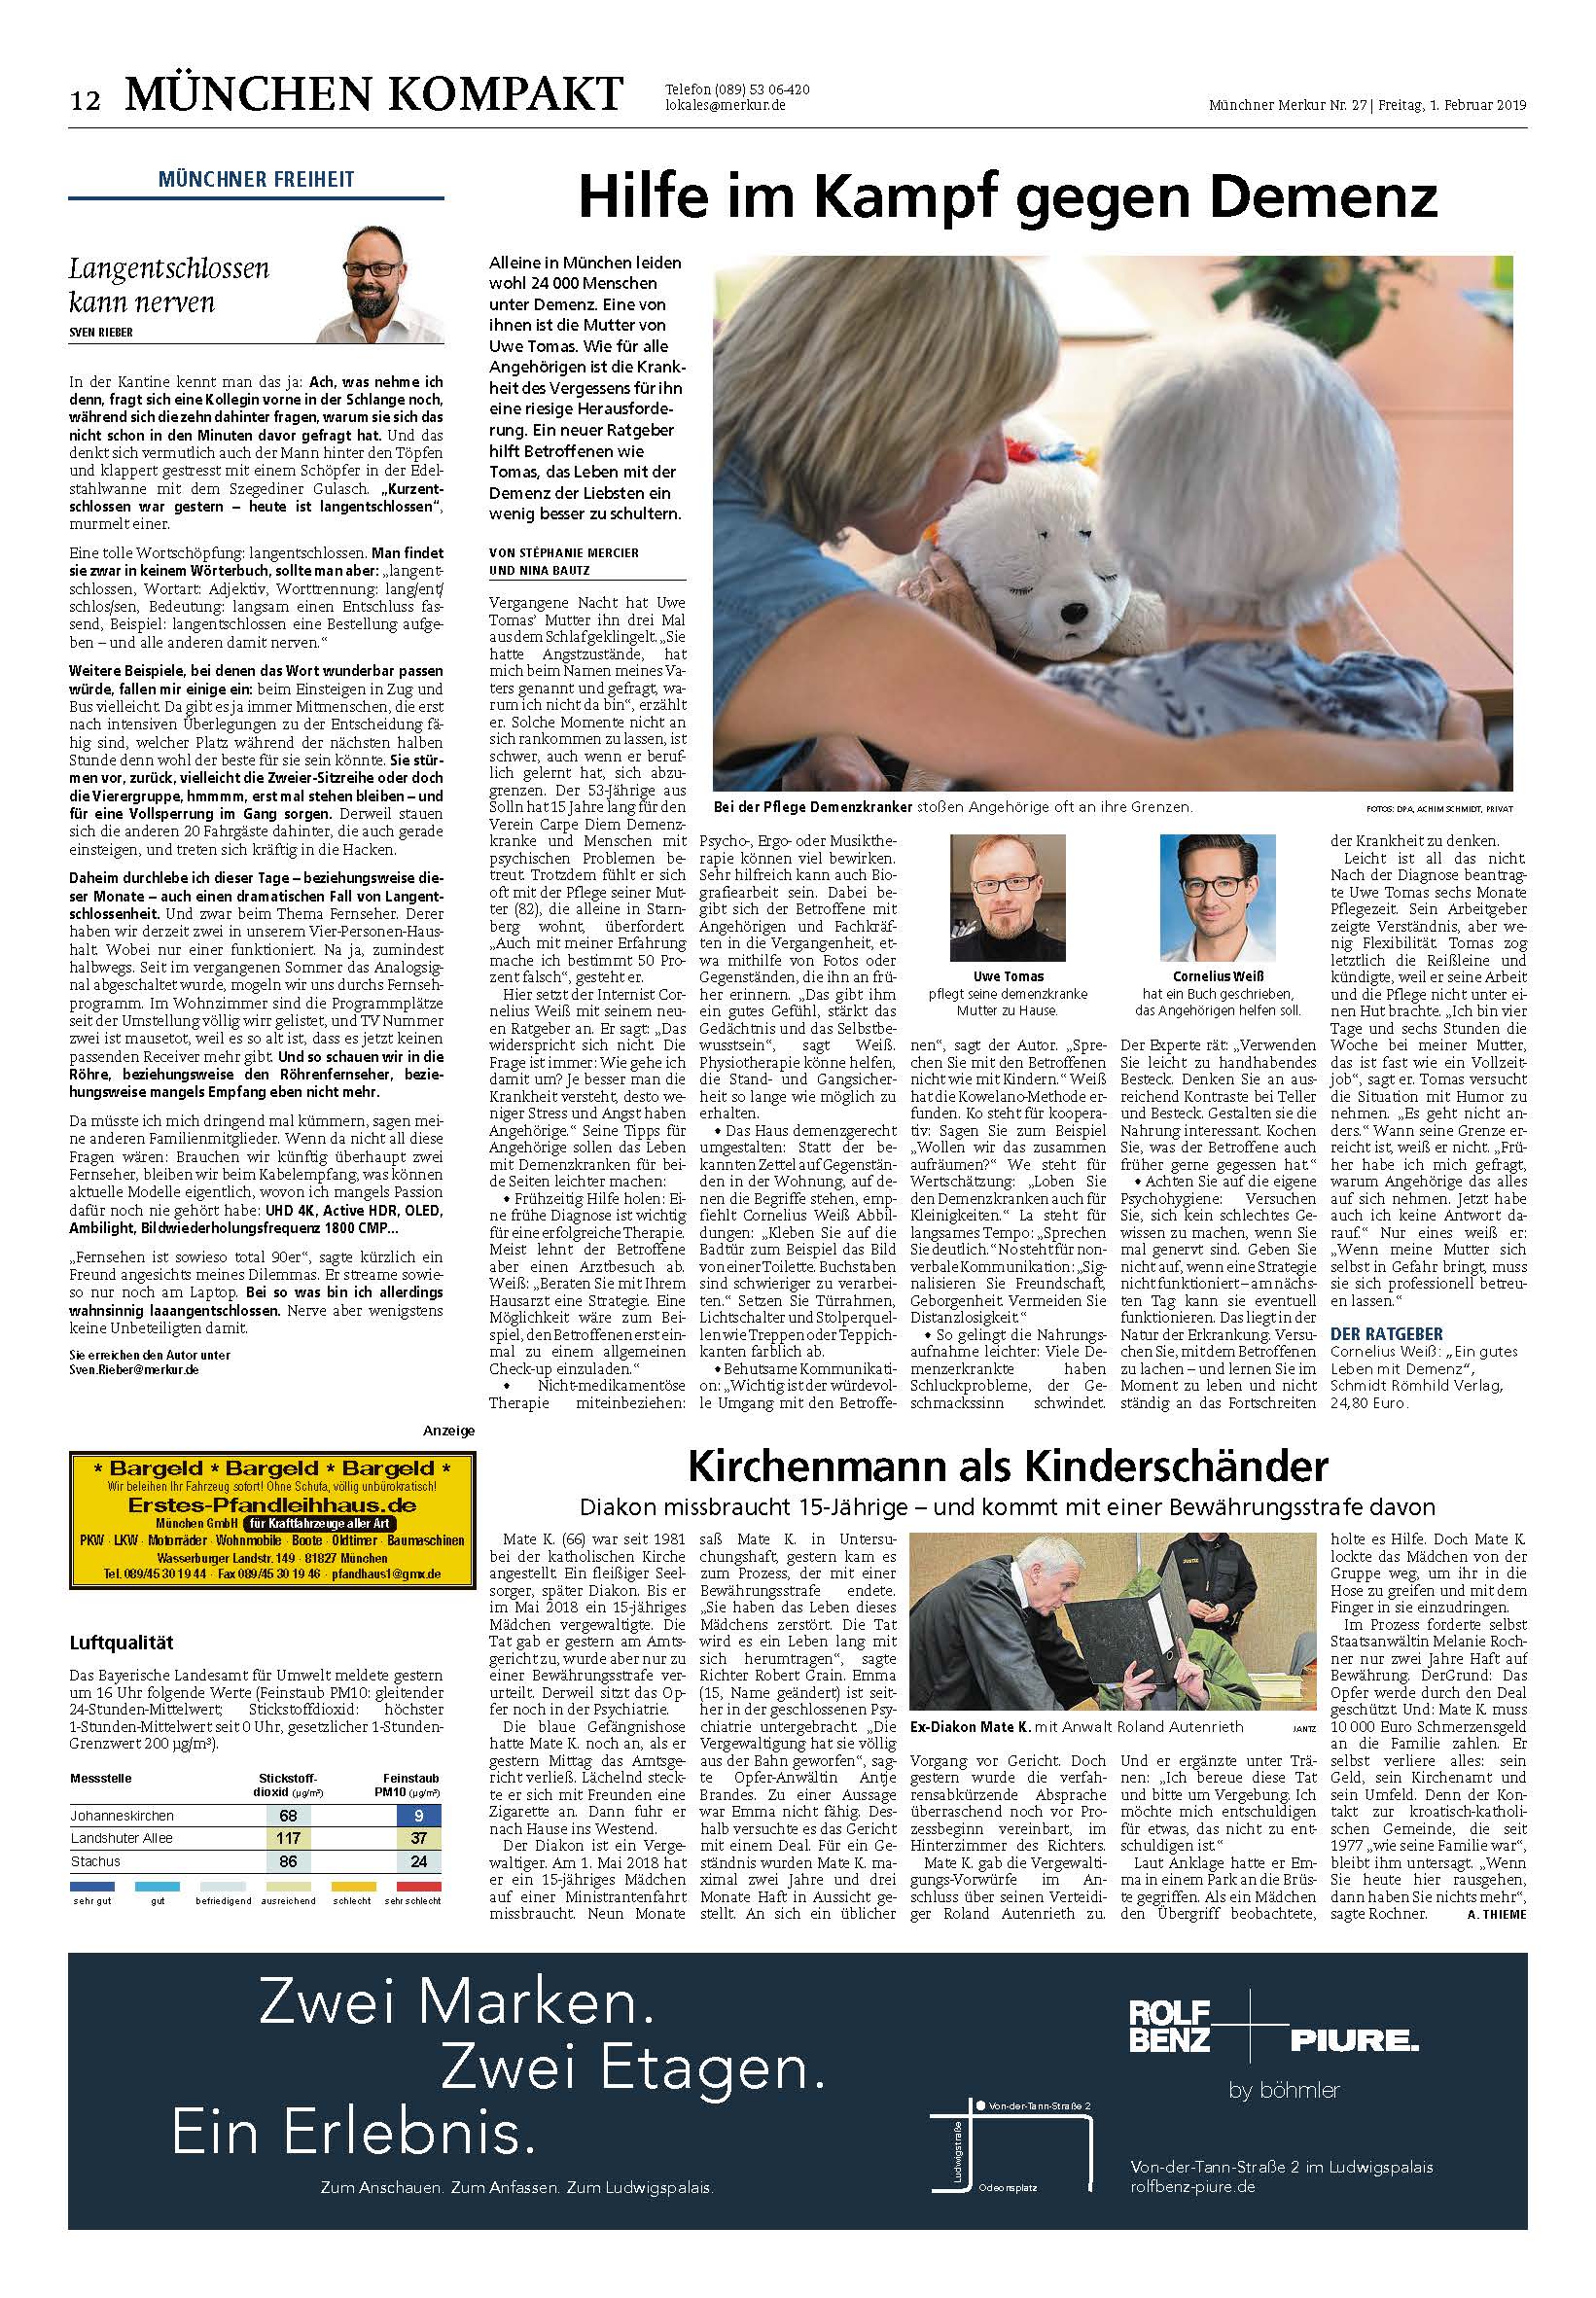 Ein gutes Leben mit Demenz - Cornelius Weiß, Artikel München Kompakt: Hilfe im Kampf gegen Demenz